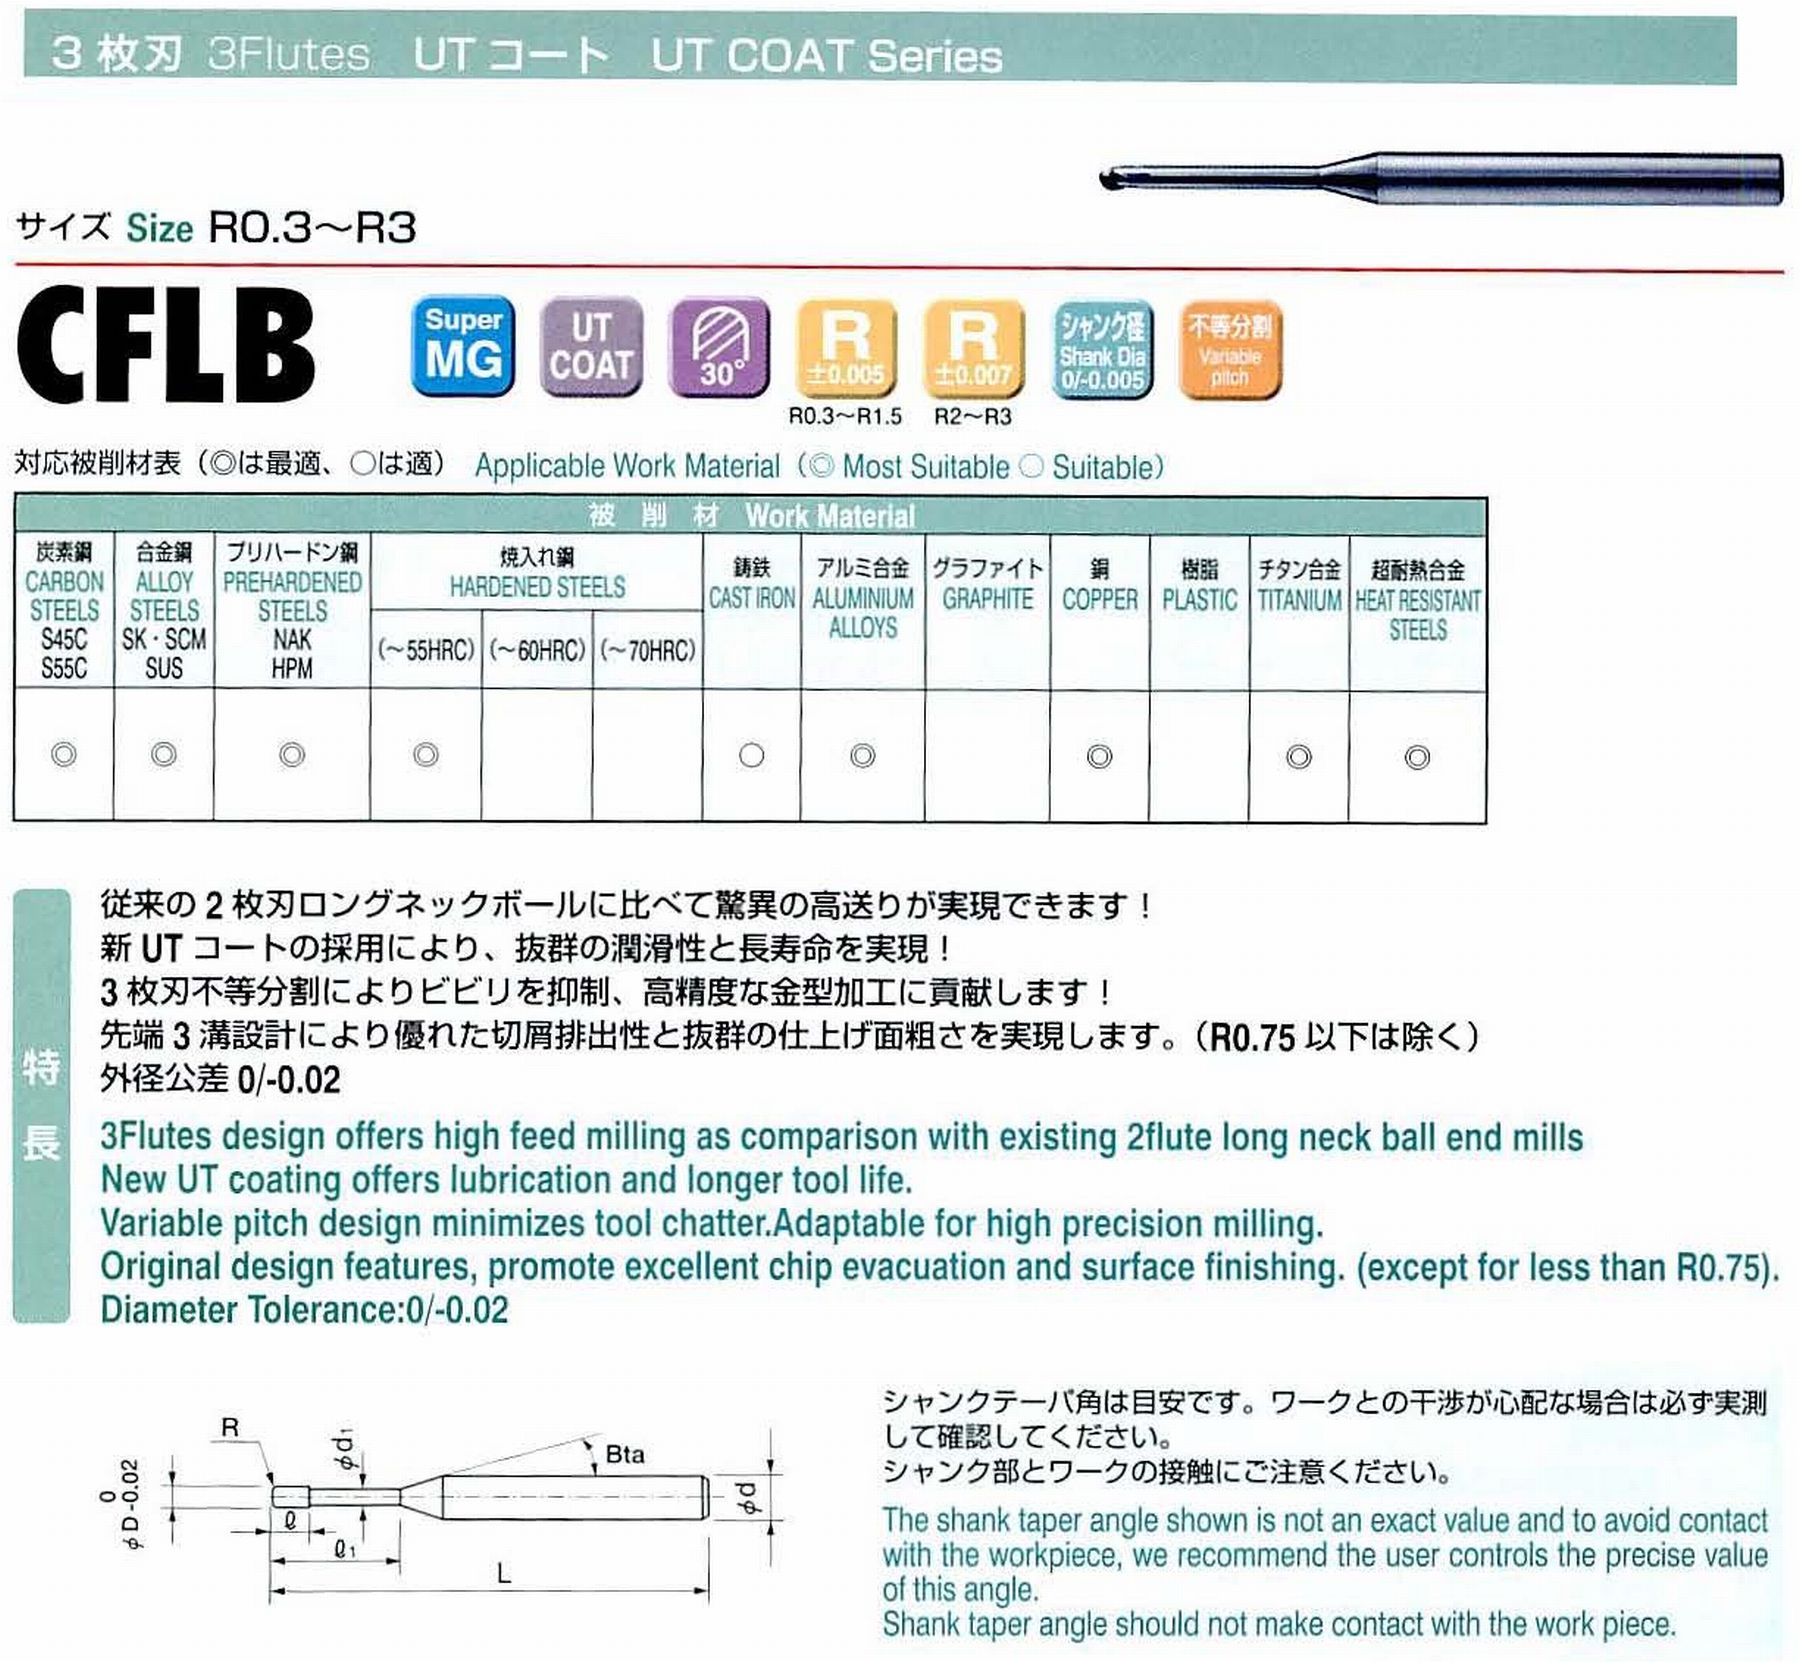 ユニオンツール 3枚刃 CFLB3030-100 ボール半径R1.5 有効長10 刃長2.4 首径2.73 シャンクテーパ角16° 全長60 シャンク径6